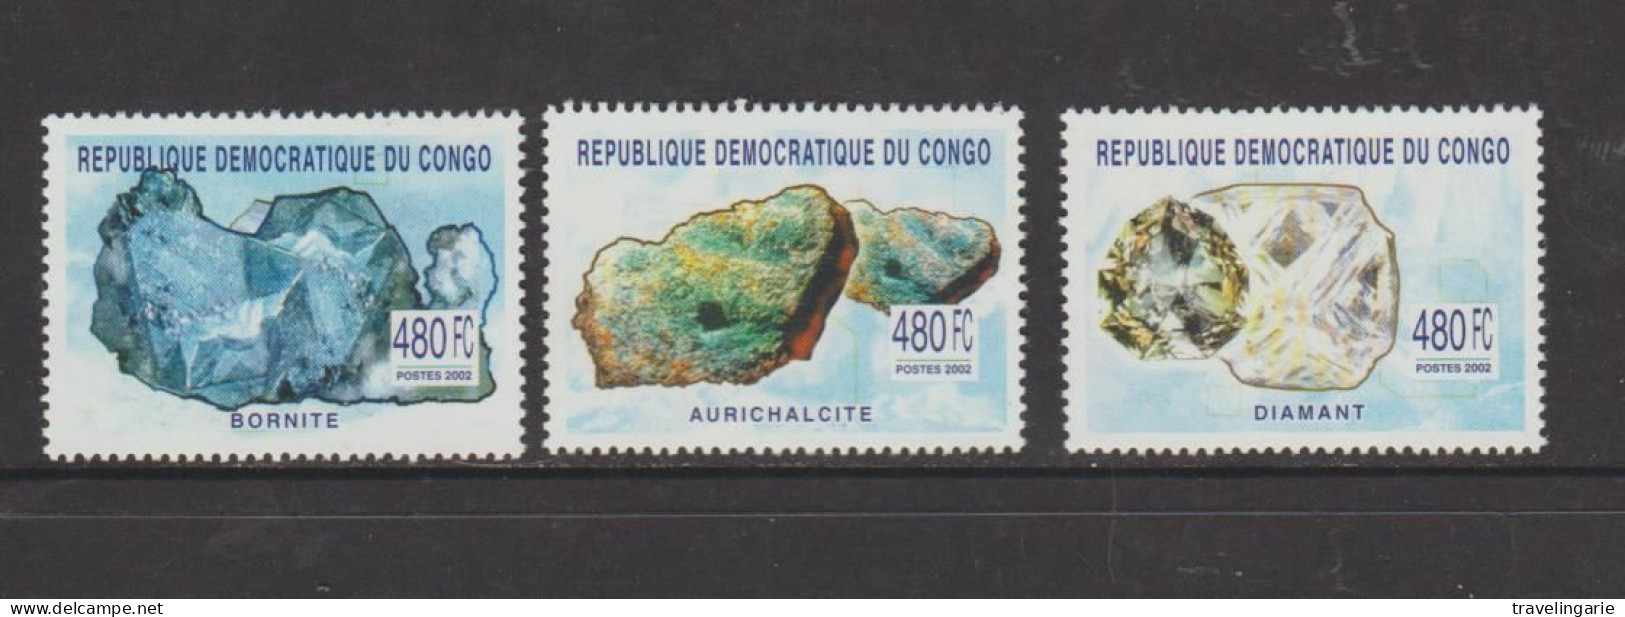 Democratic Republic Of Congo 2003 Minerals Set Of 3 MNH ** - Nuevos